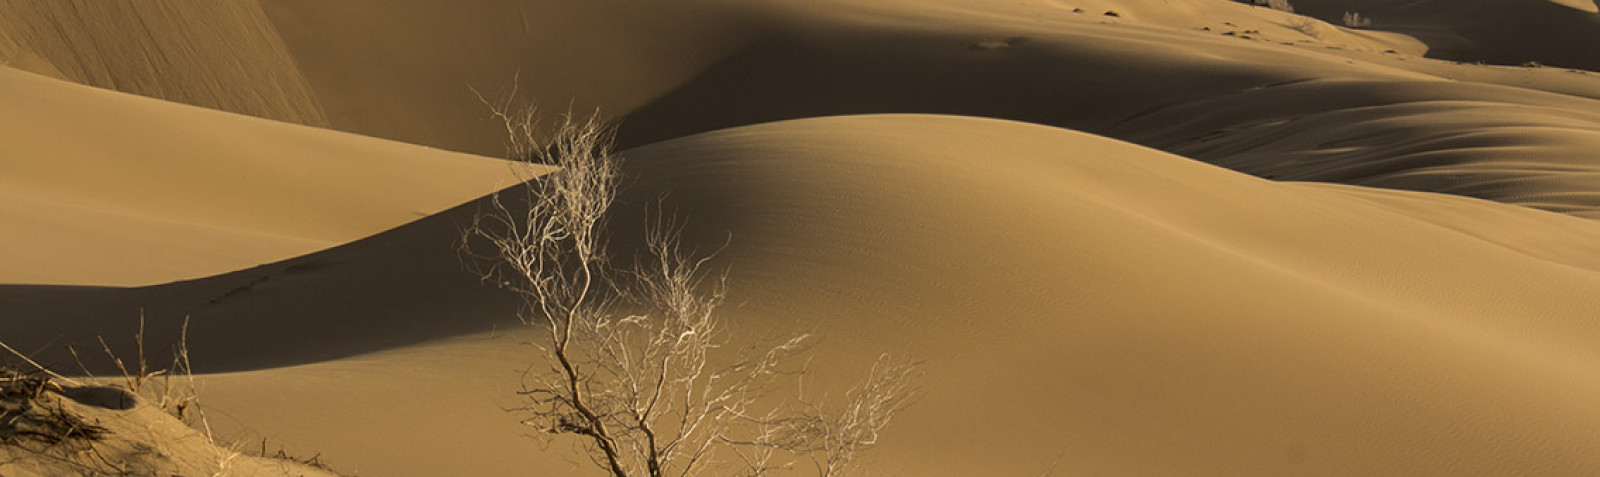 صحراء خور و بیابانک